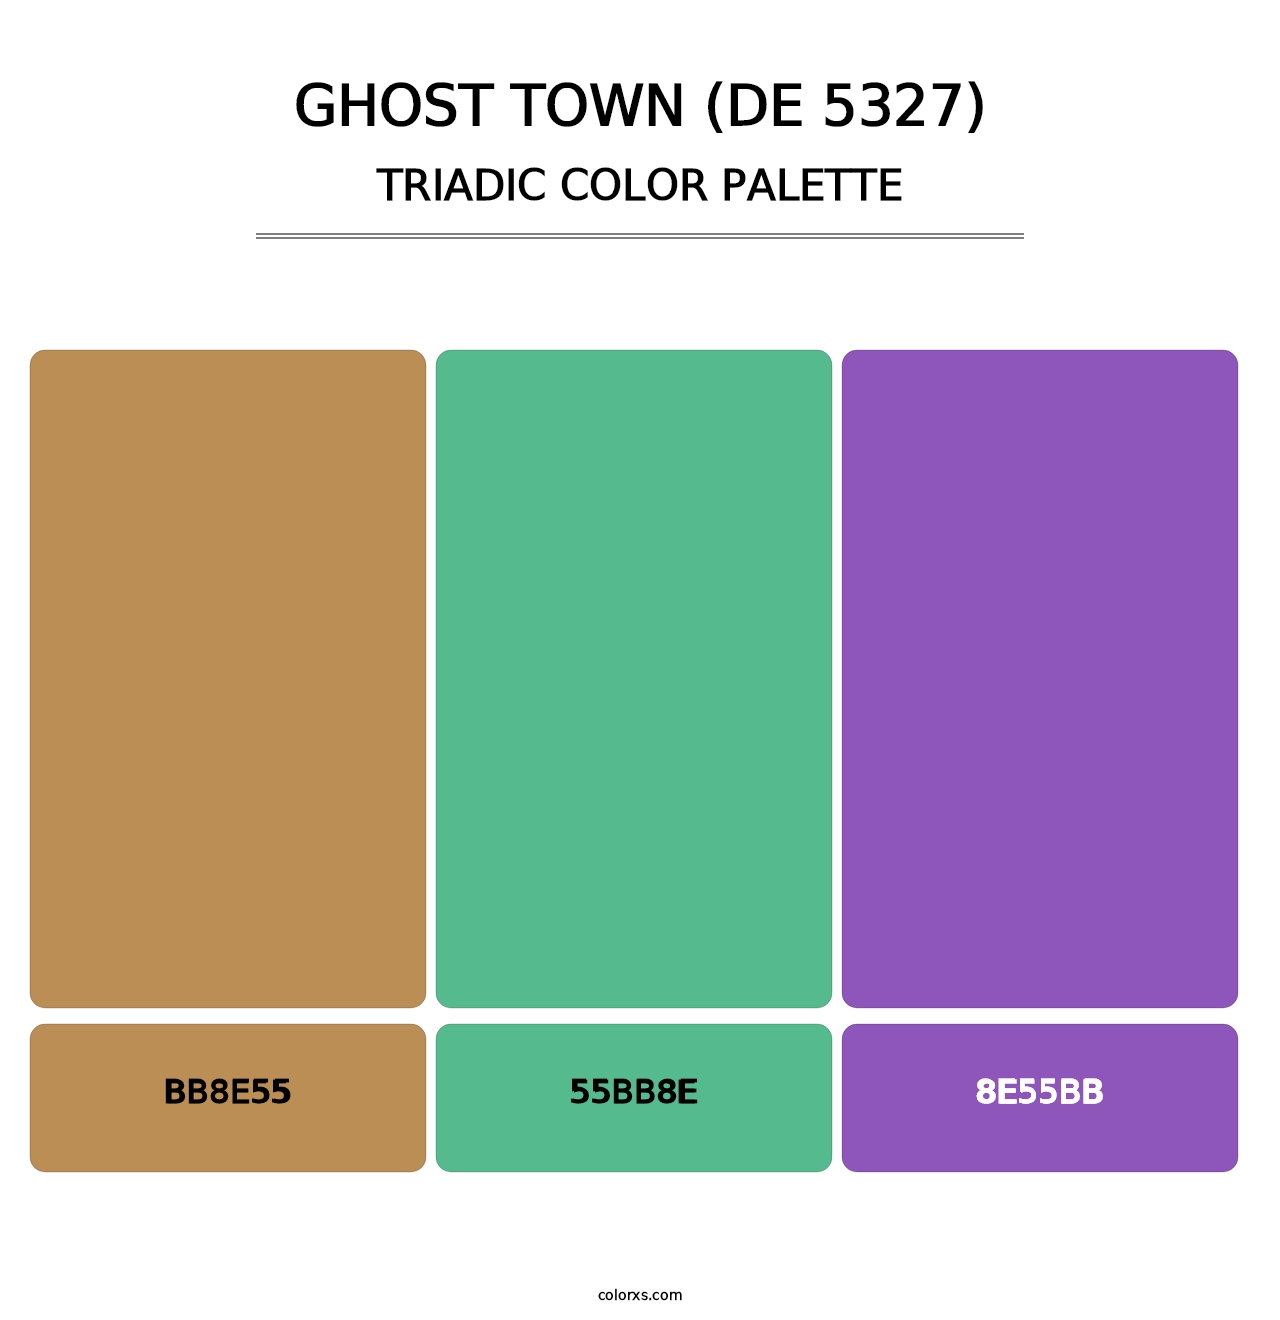 Ghost Town (DE 5327) - Triadic Color Palette